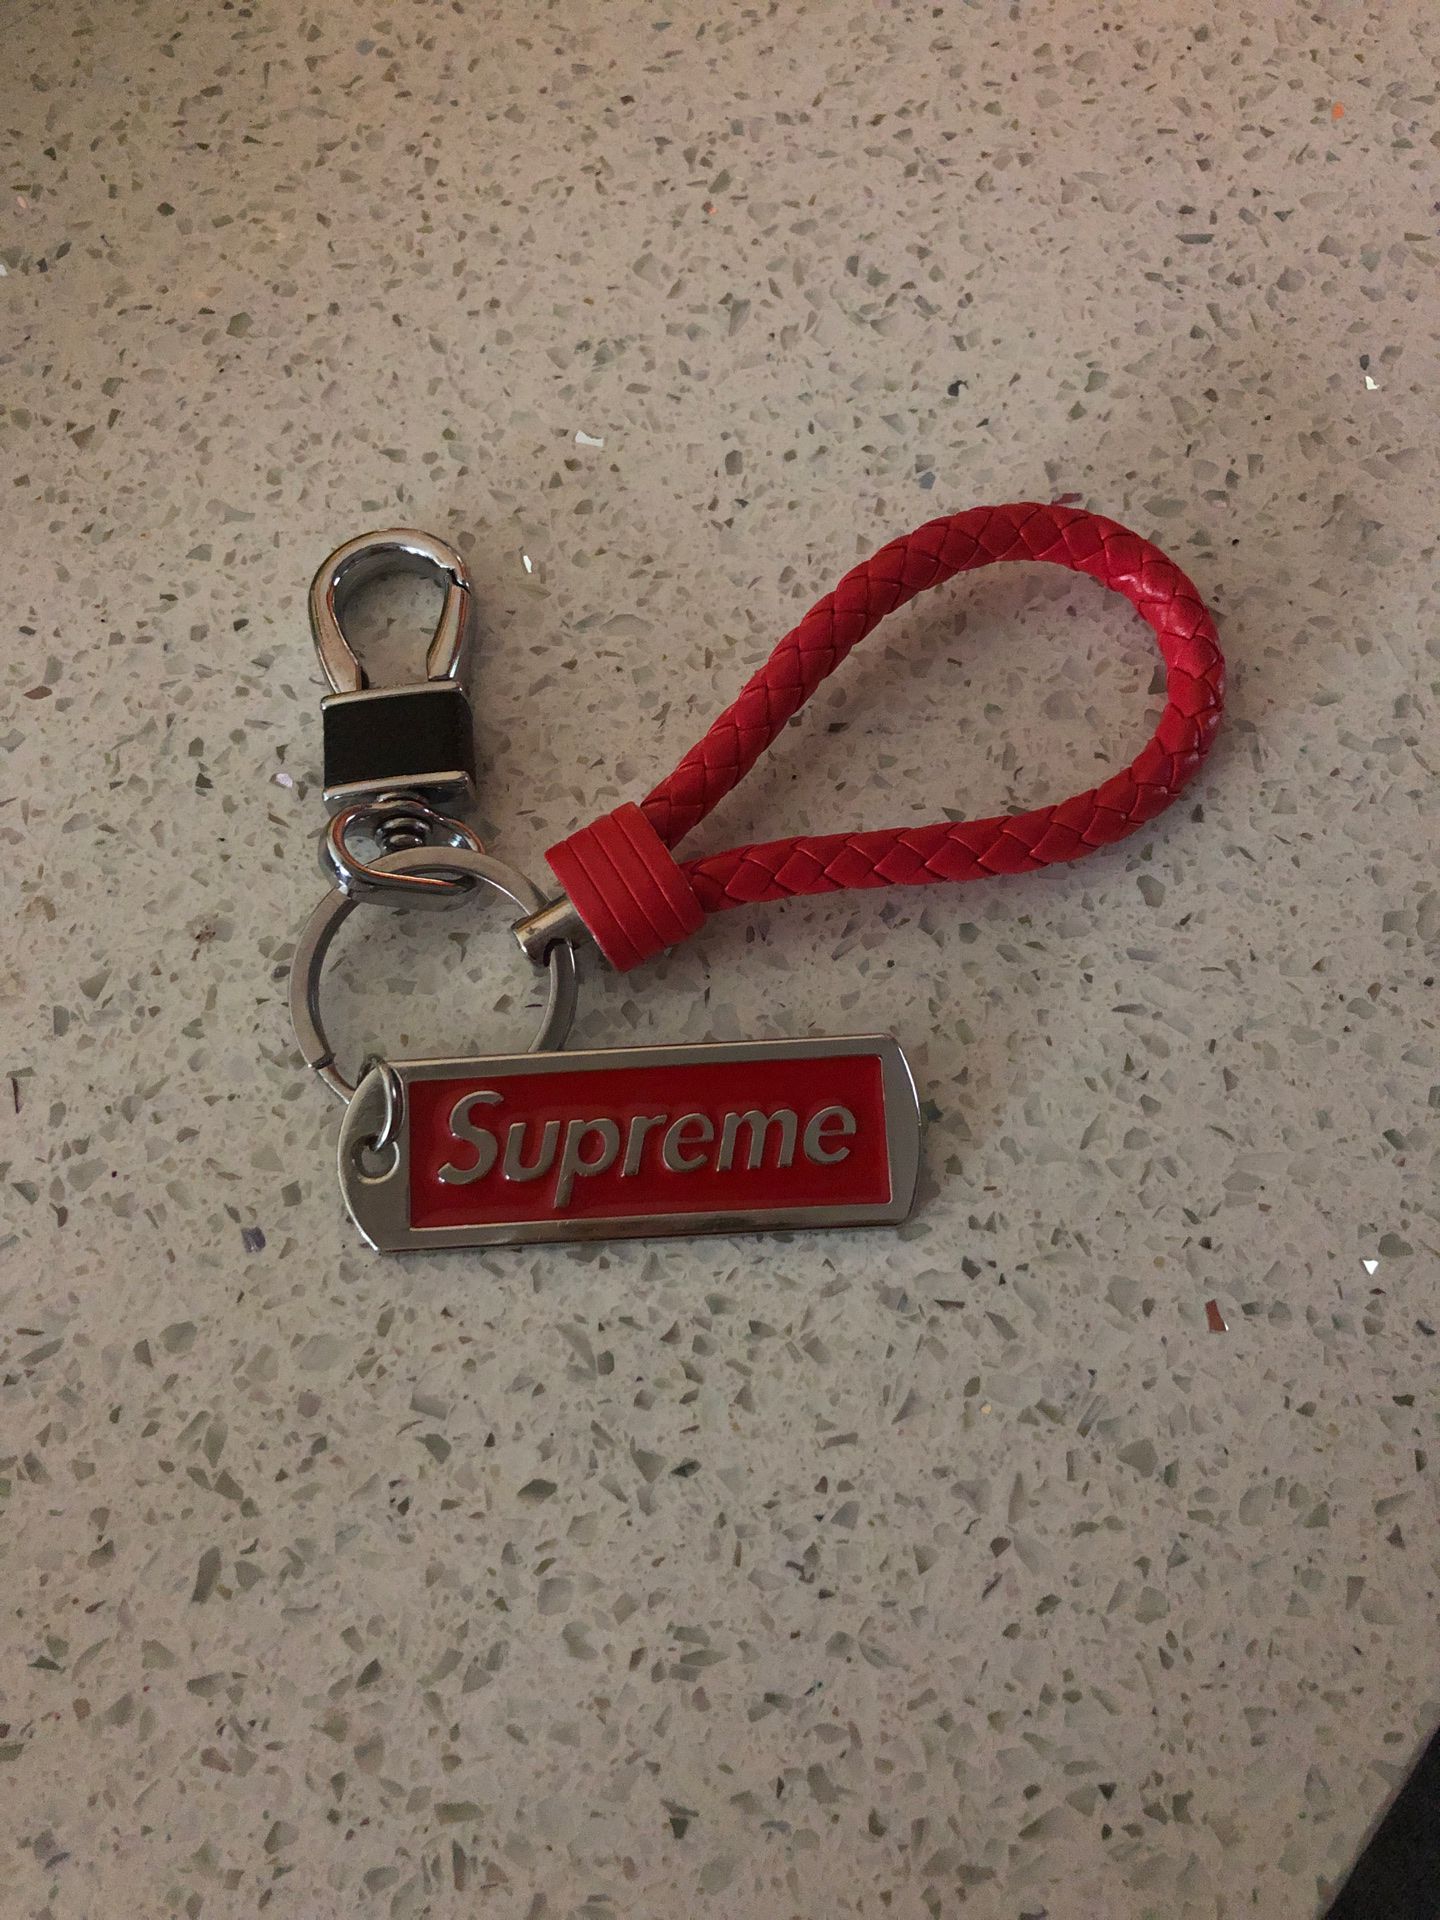 Supreme keychain